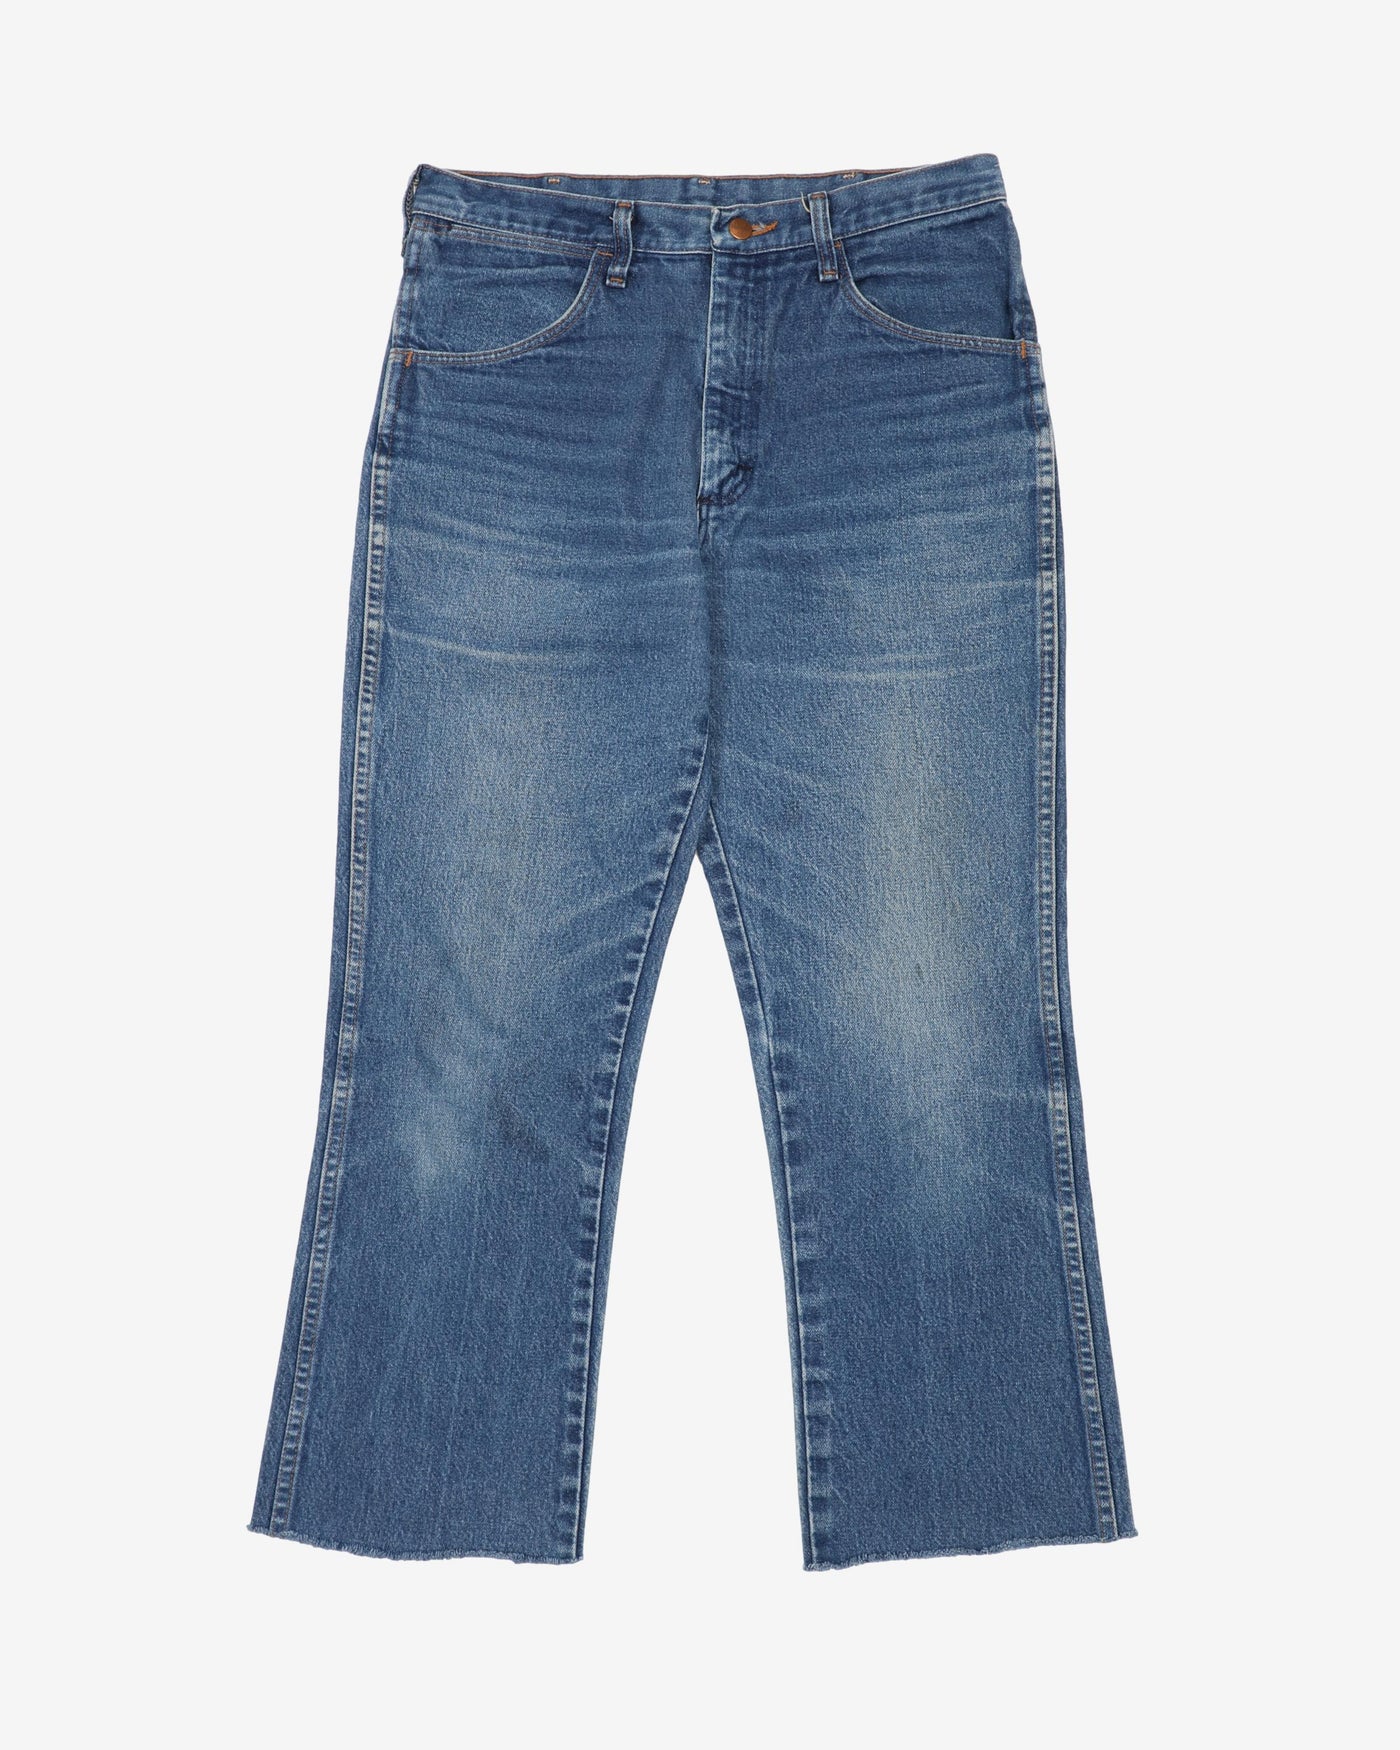 Vintage 90s Wrangler Washed Blue Denim Jeans - W32 L26